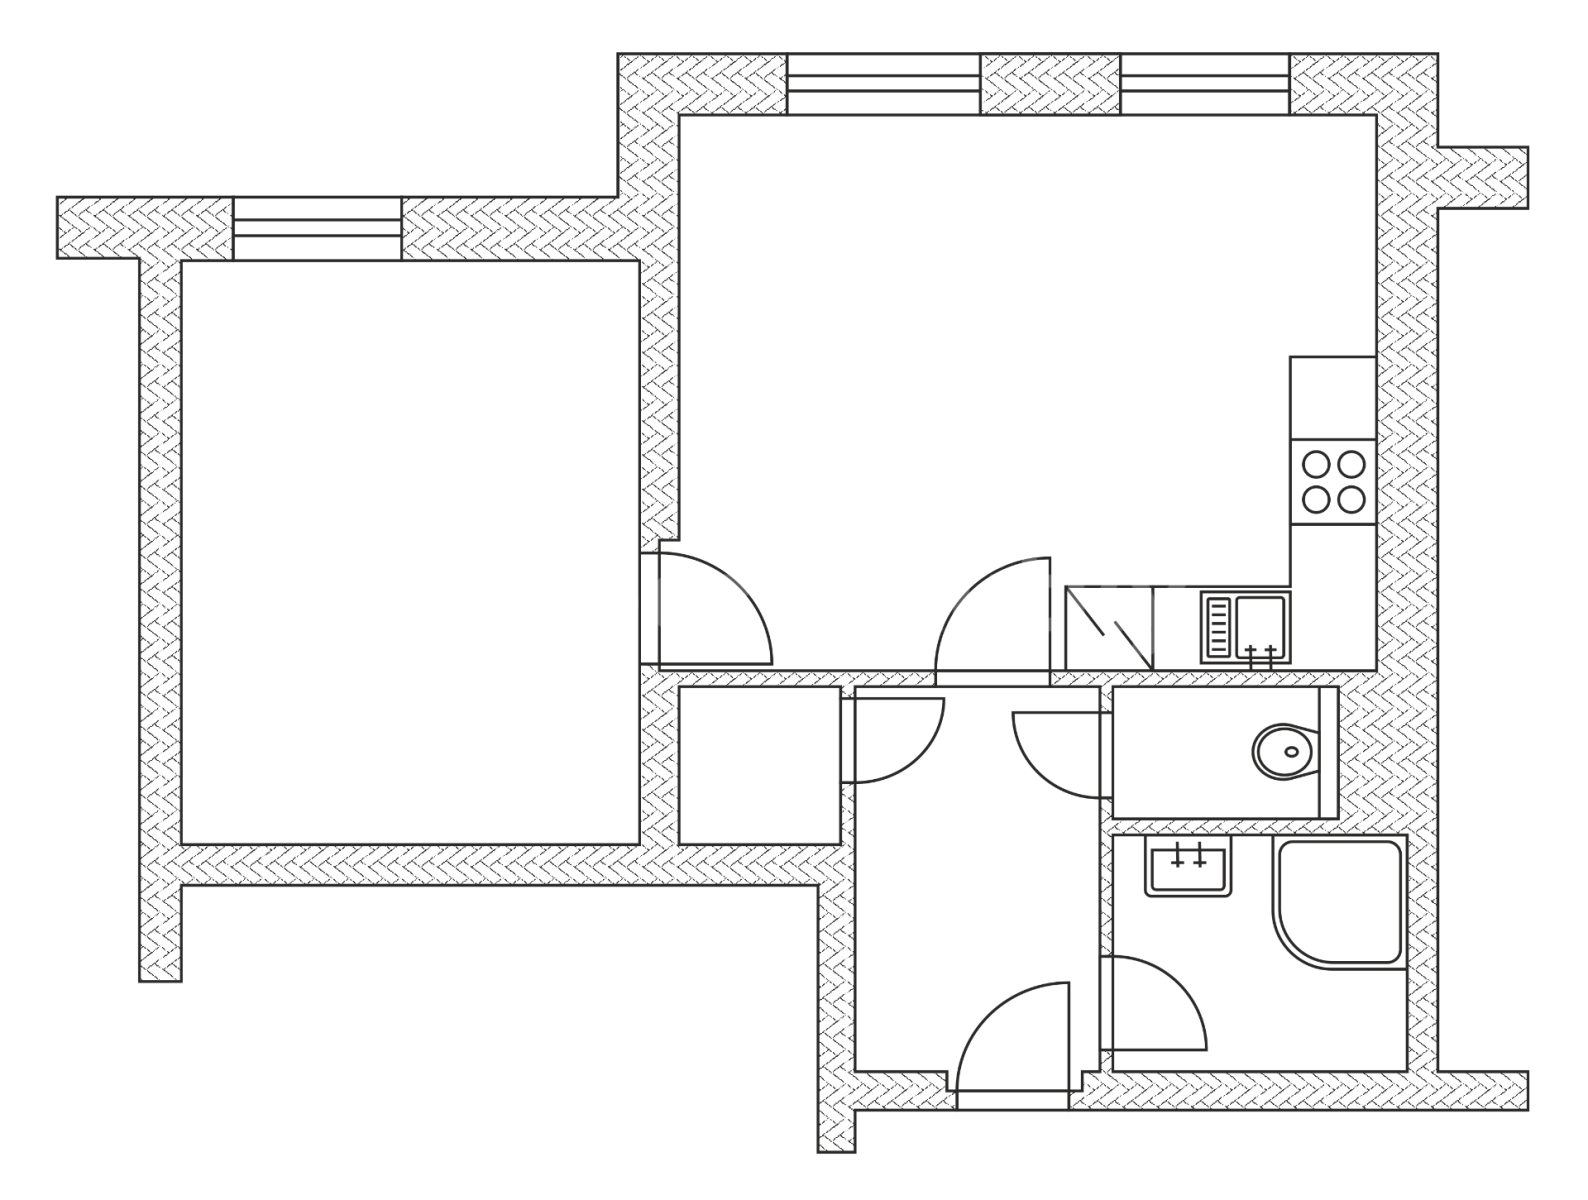 1 bedroom with open-plan kitchen flat to rent, 46 m², Novosady, Holešov, Zlínský Region